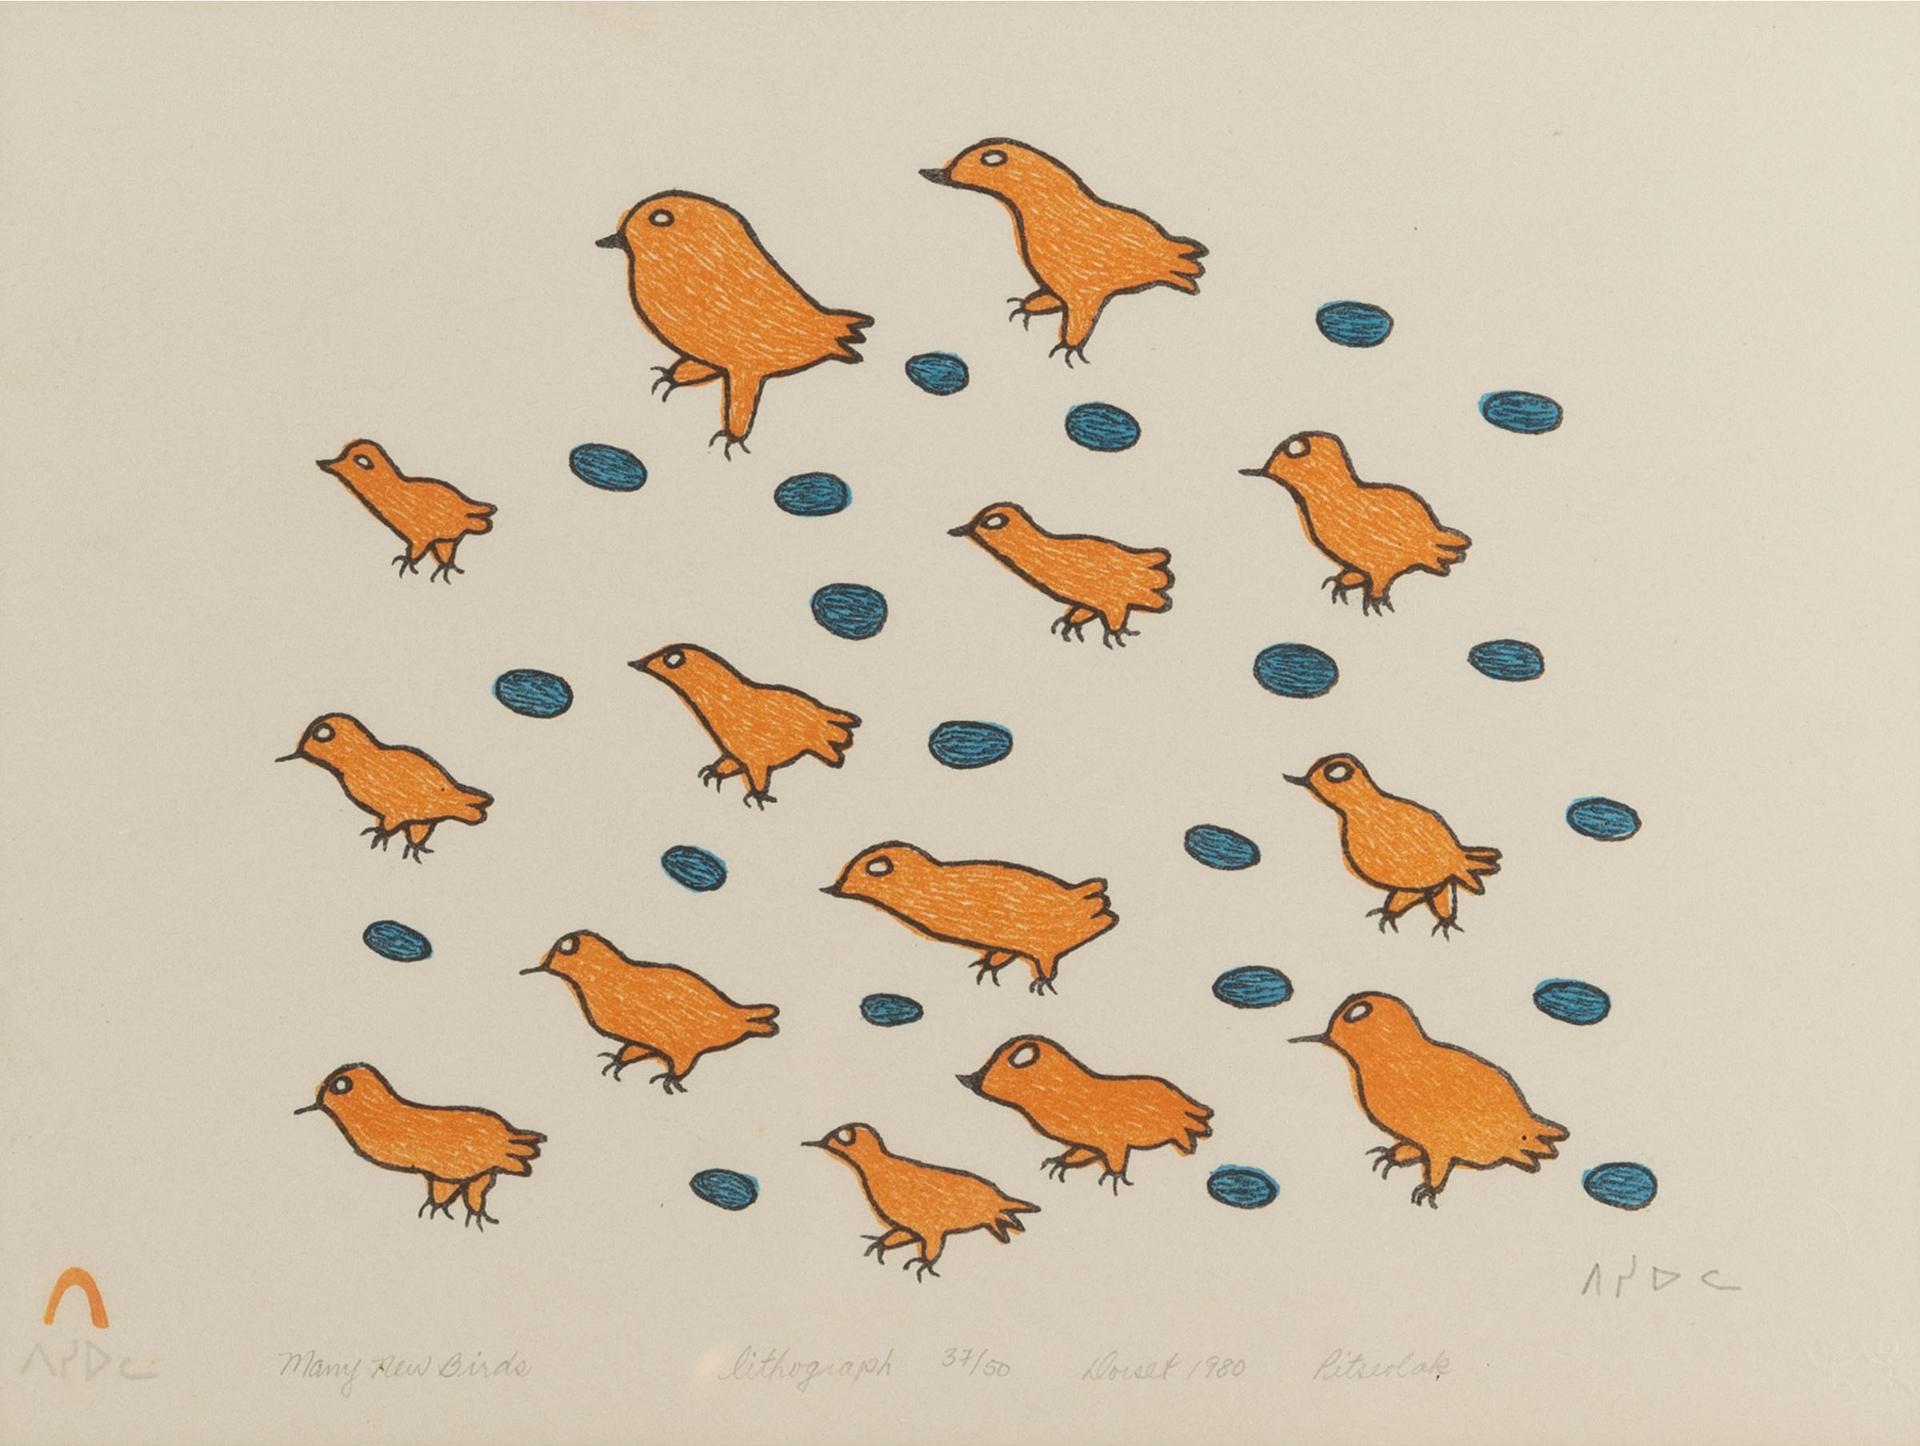 Pitseolak Ashoona (1904-1983) - Many New Birds, 1980